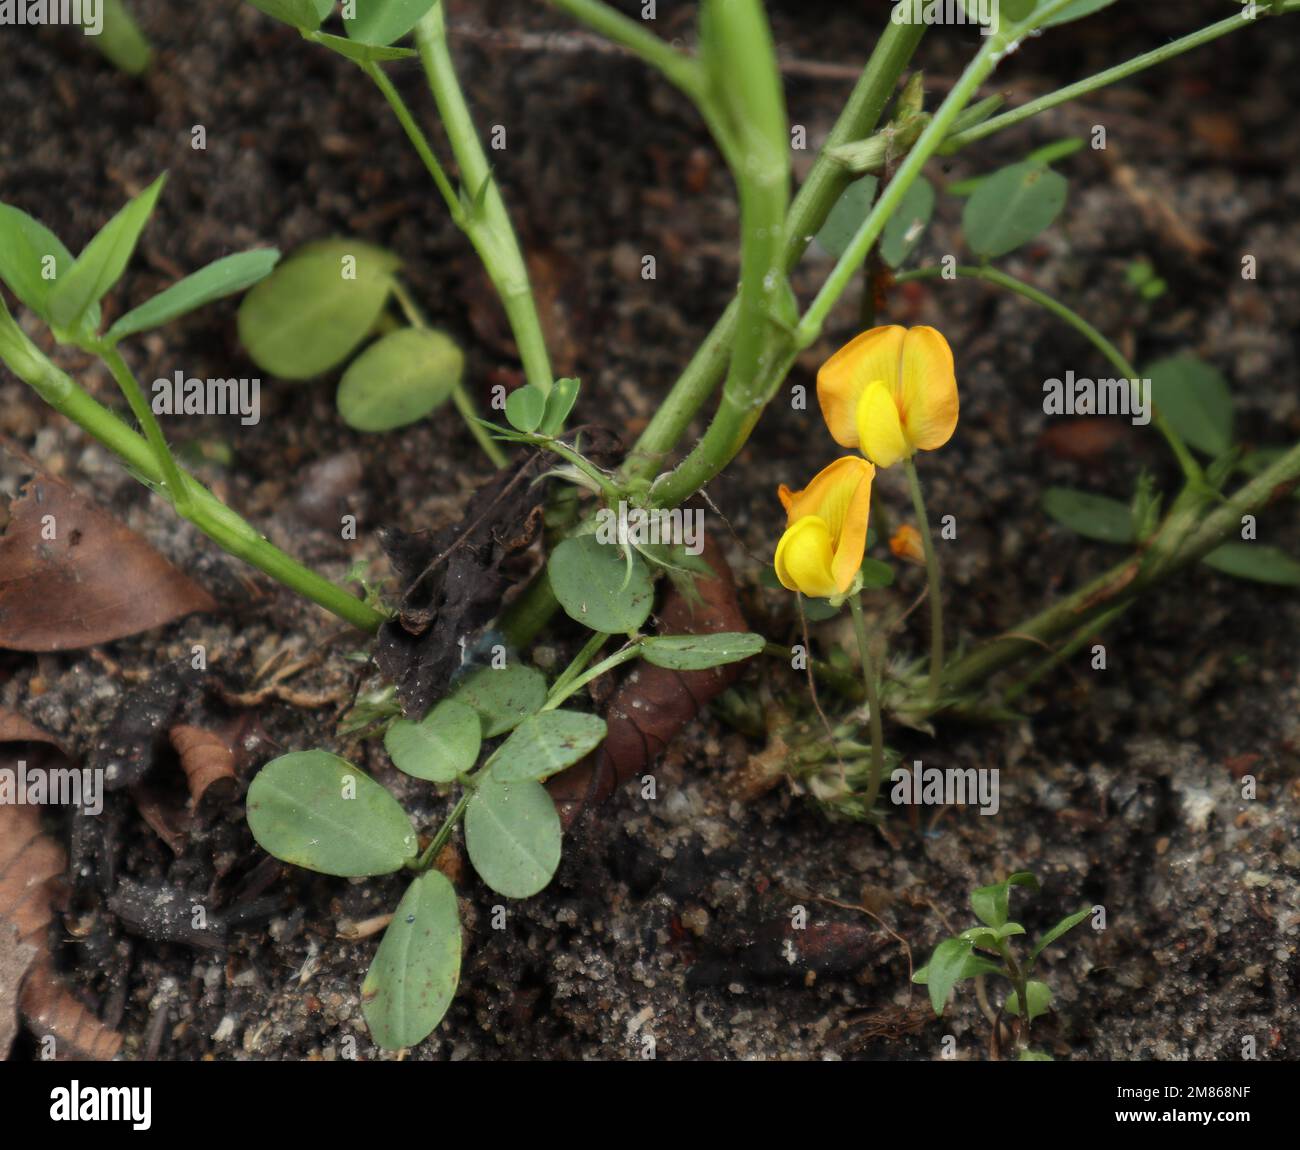 Gros plan d'une partie inférieure de la plante de Peanut (Arachis hypogaea) avec du sol et deux fleurs de Peanut de couleur jaune Banque D'Images